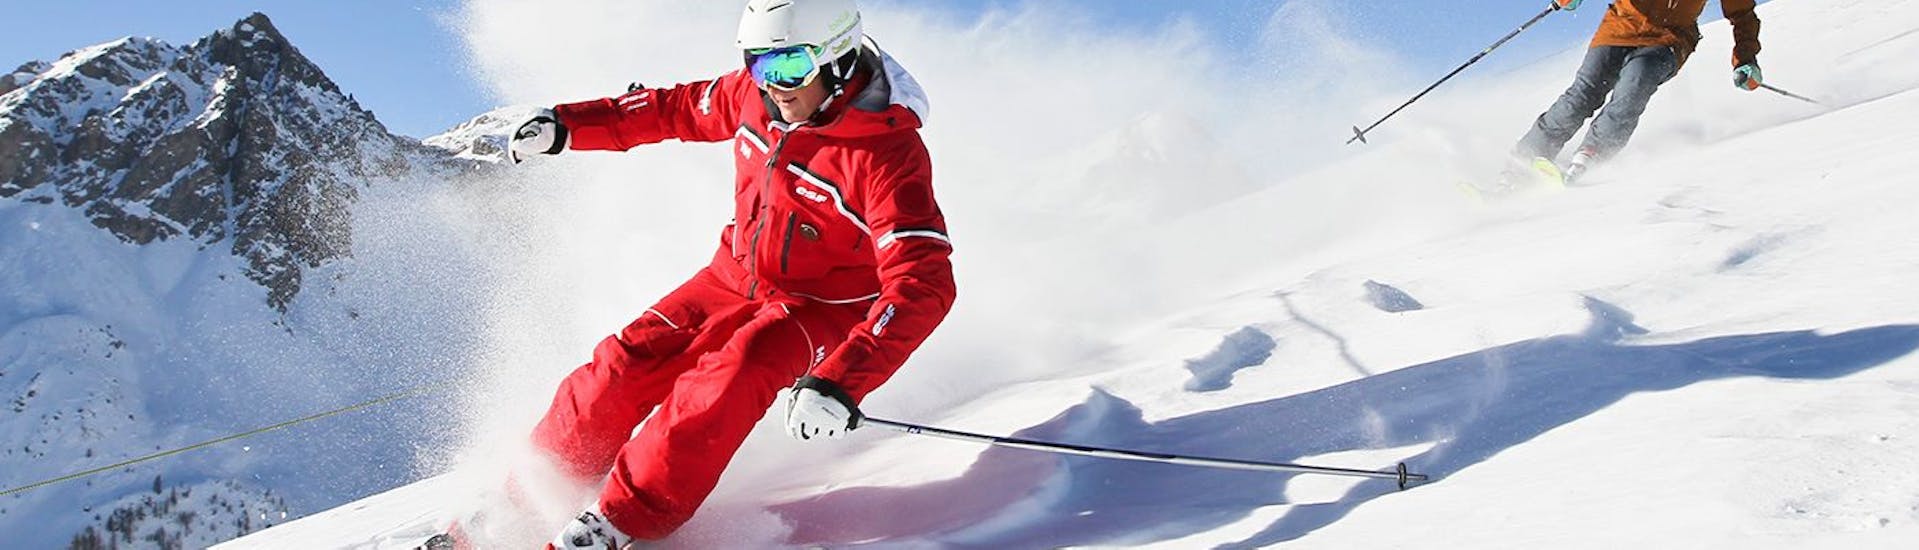 Privater Skikurs für Erwachsene für alle Levels.